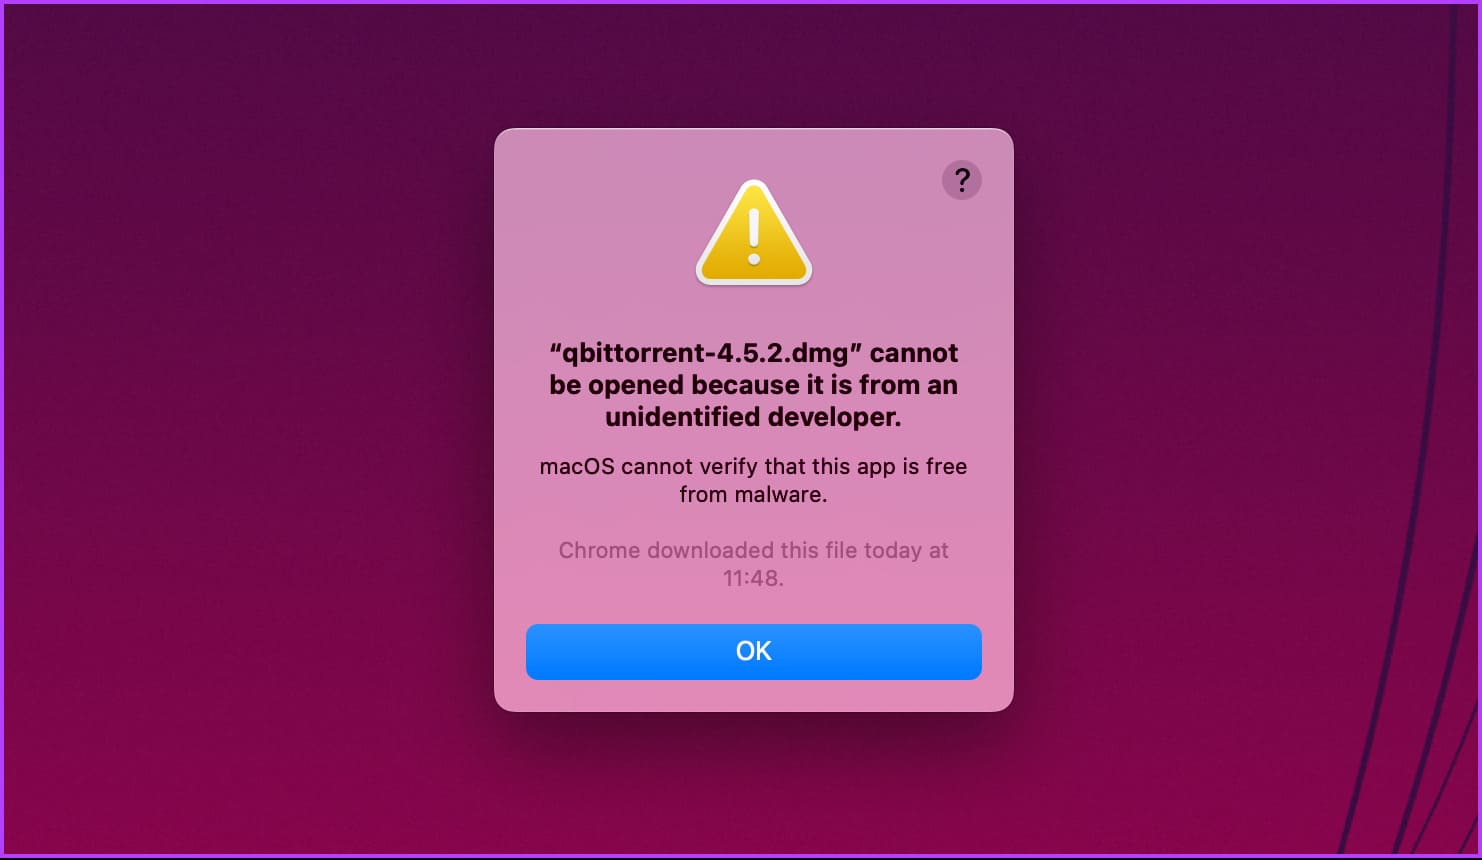 4 إصلاحات لـ "يتعذر على macOS التحقق من خلو هذا L'applicationمن البرامج الضارة" - %categories